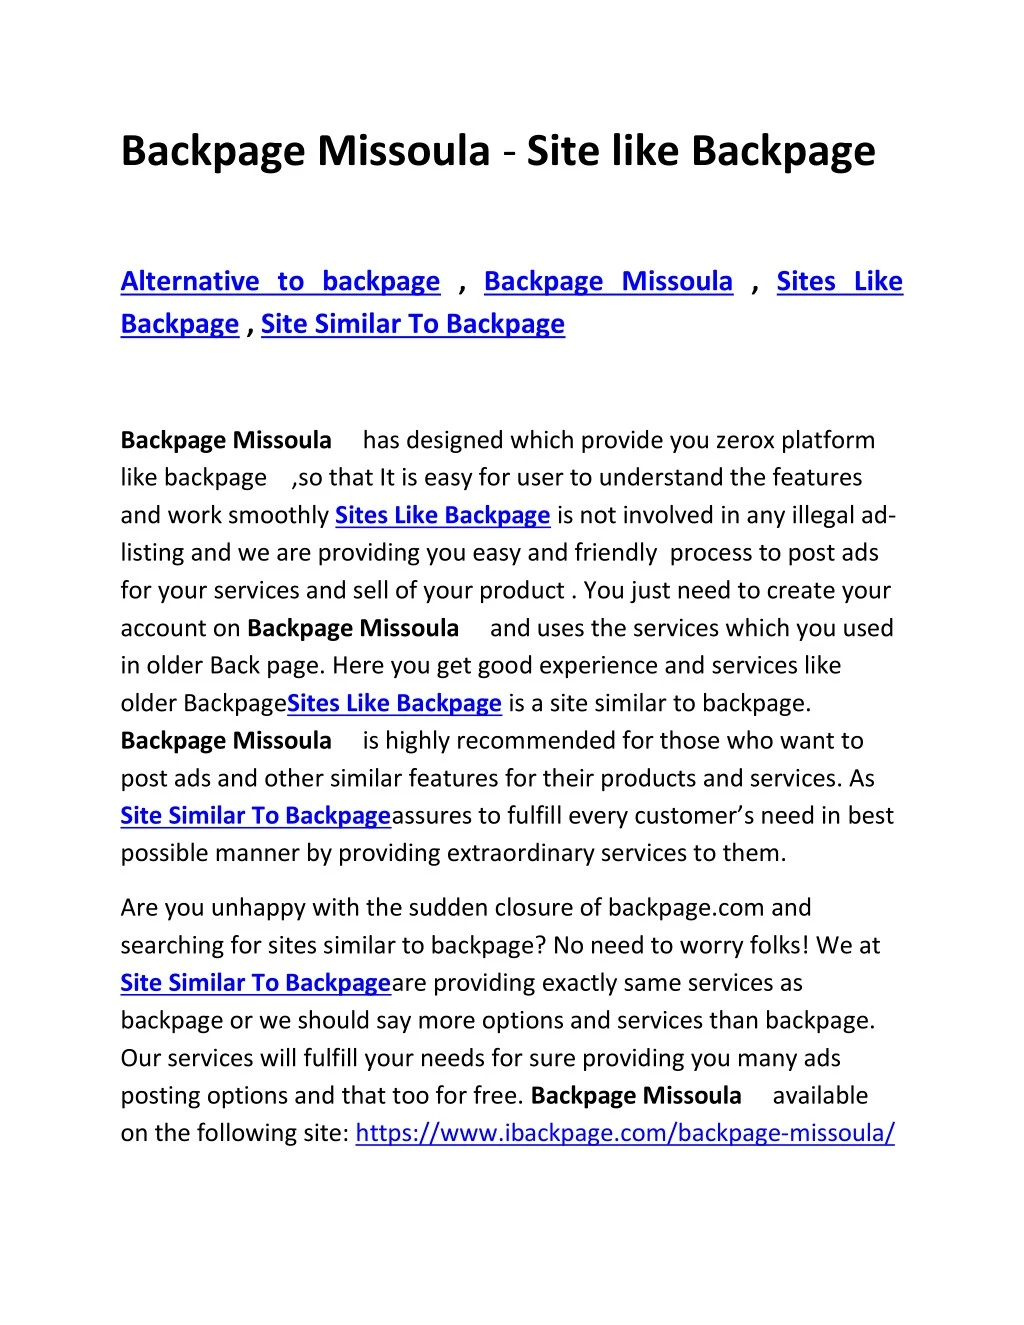 backpage missoula site like backpage